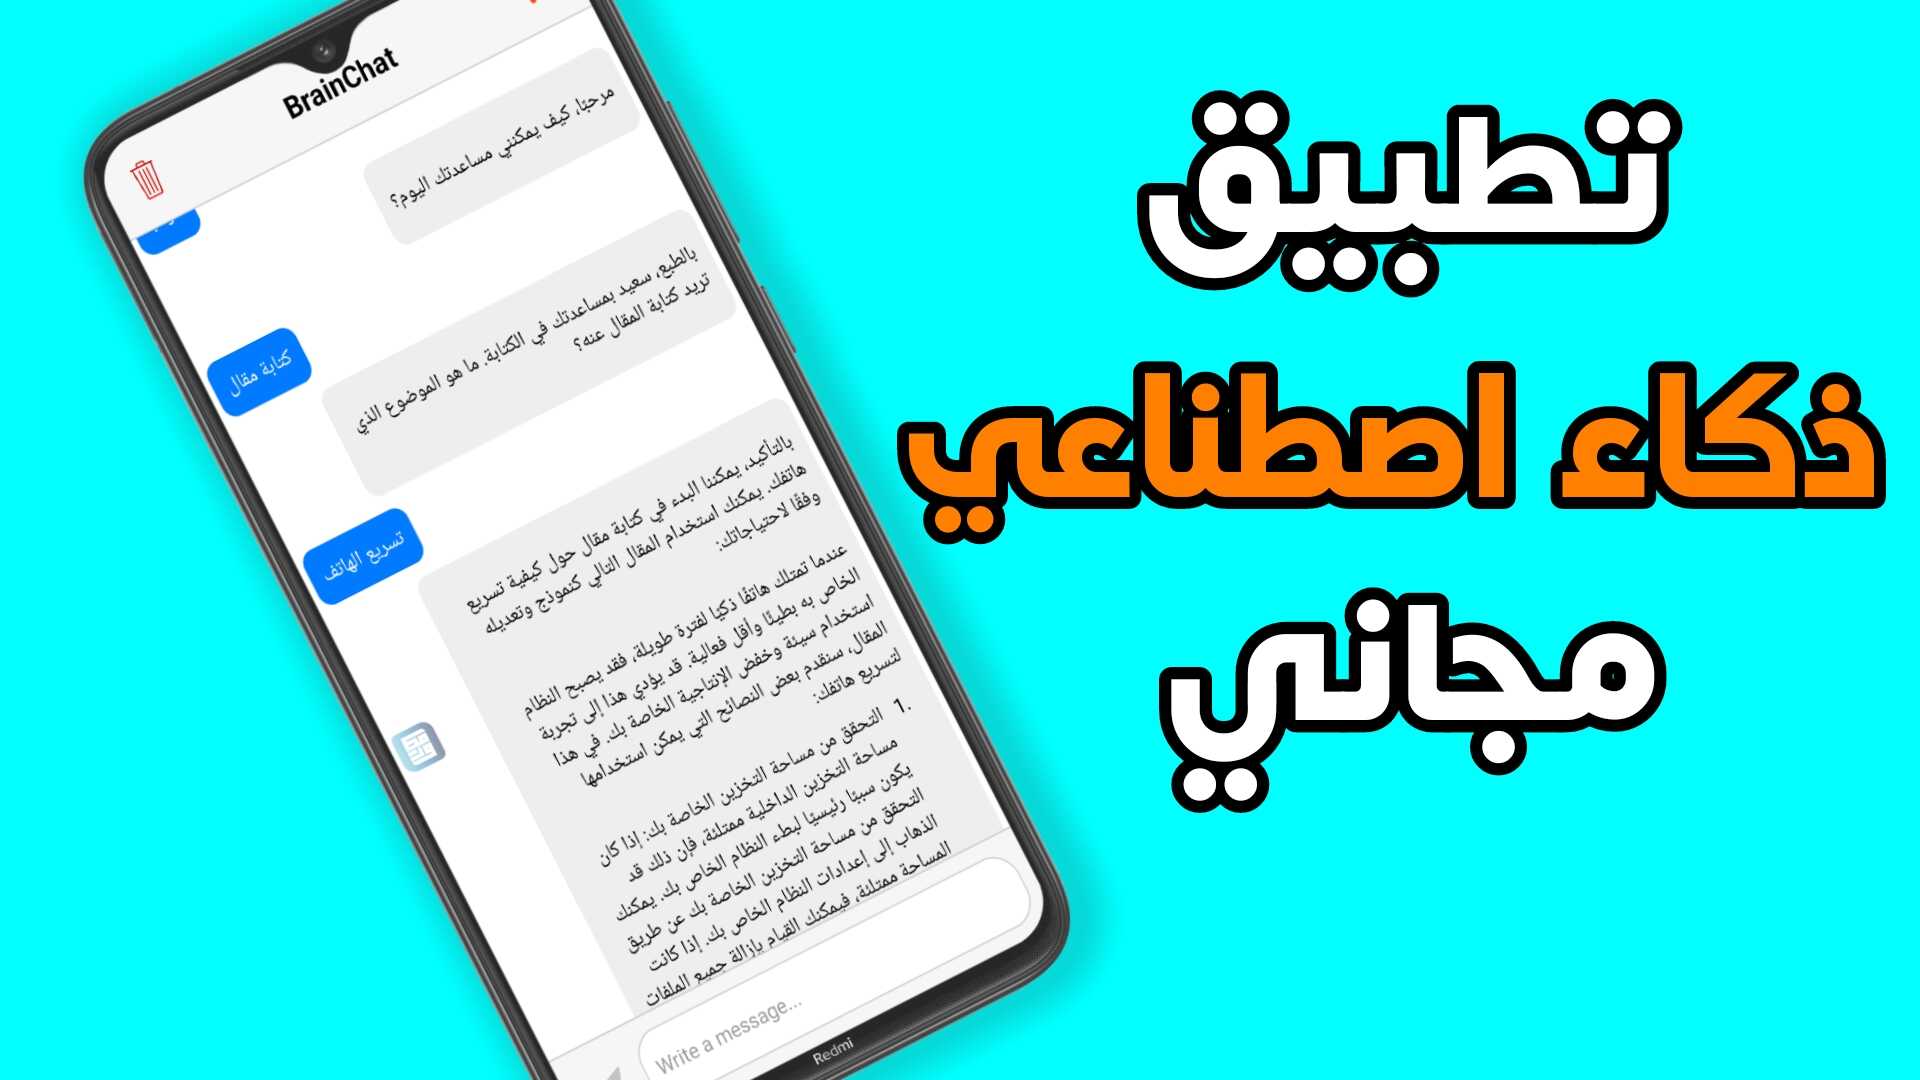 أفضل تطبيق ذكاء اصطناعي مجاني للاندرويد يدعم الكتابة باللغة العربية